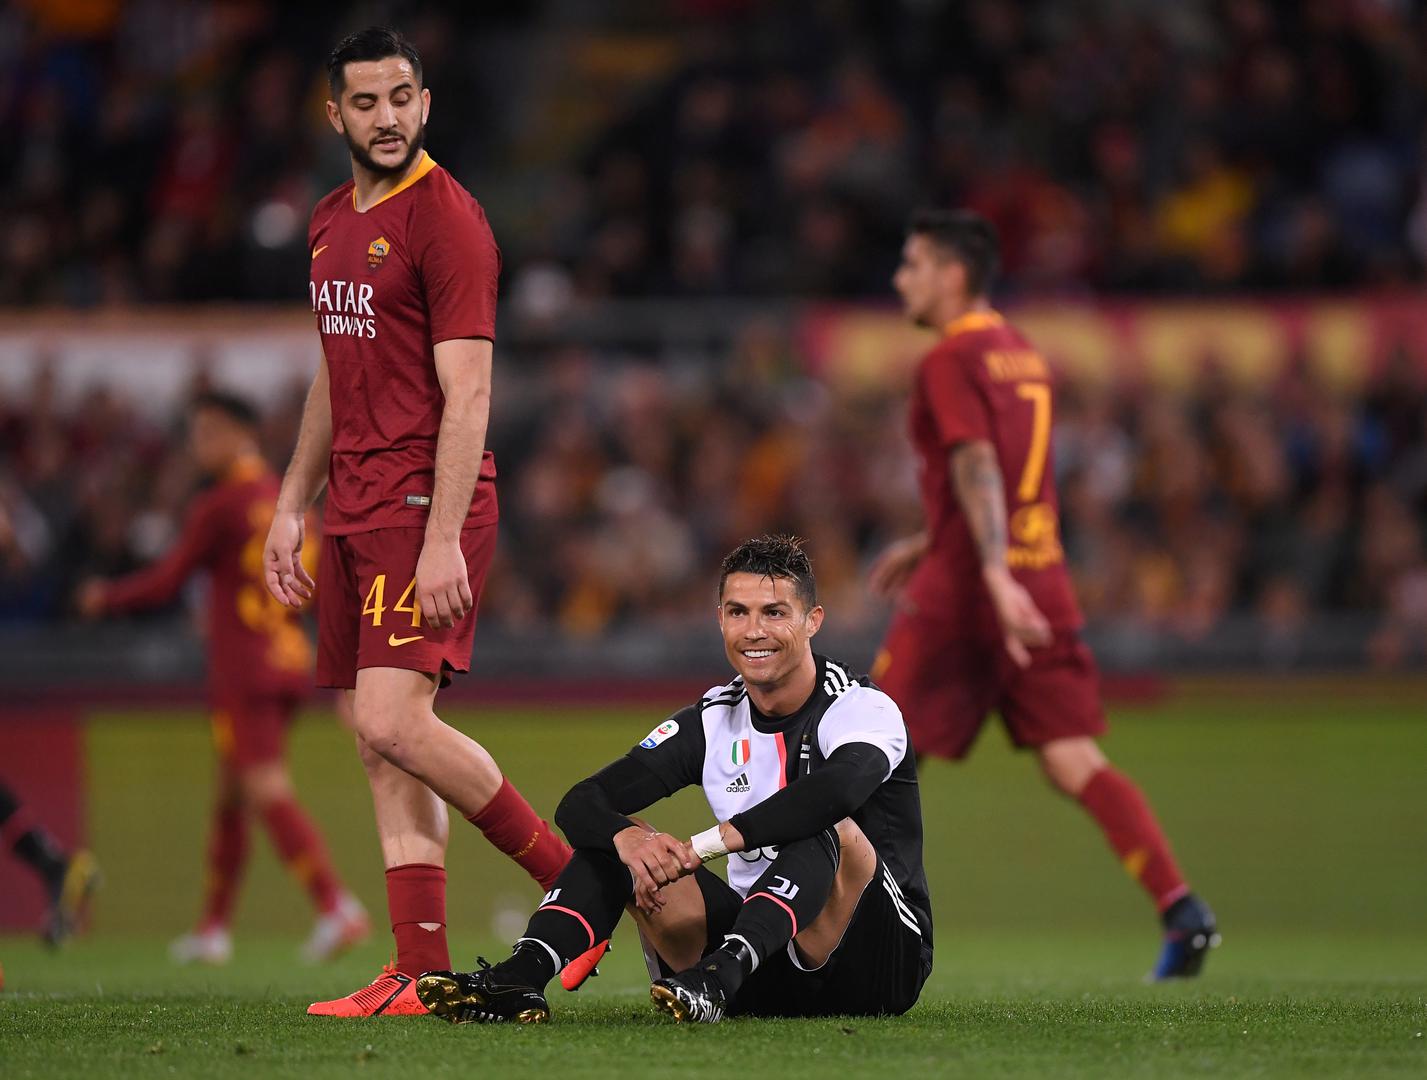 Napadač Juventusa Cristiano Ronaldo u 58. minuti utakmice porječkao se s Alessandrom Florenzijem. 